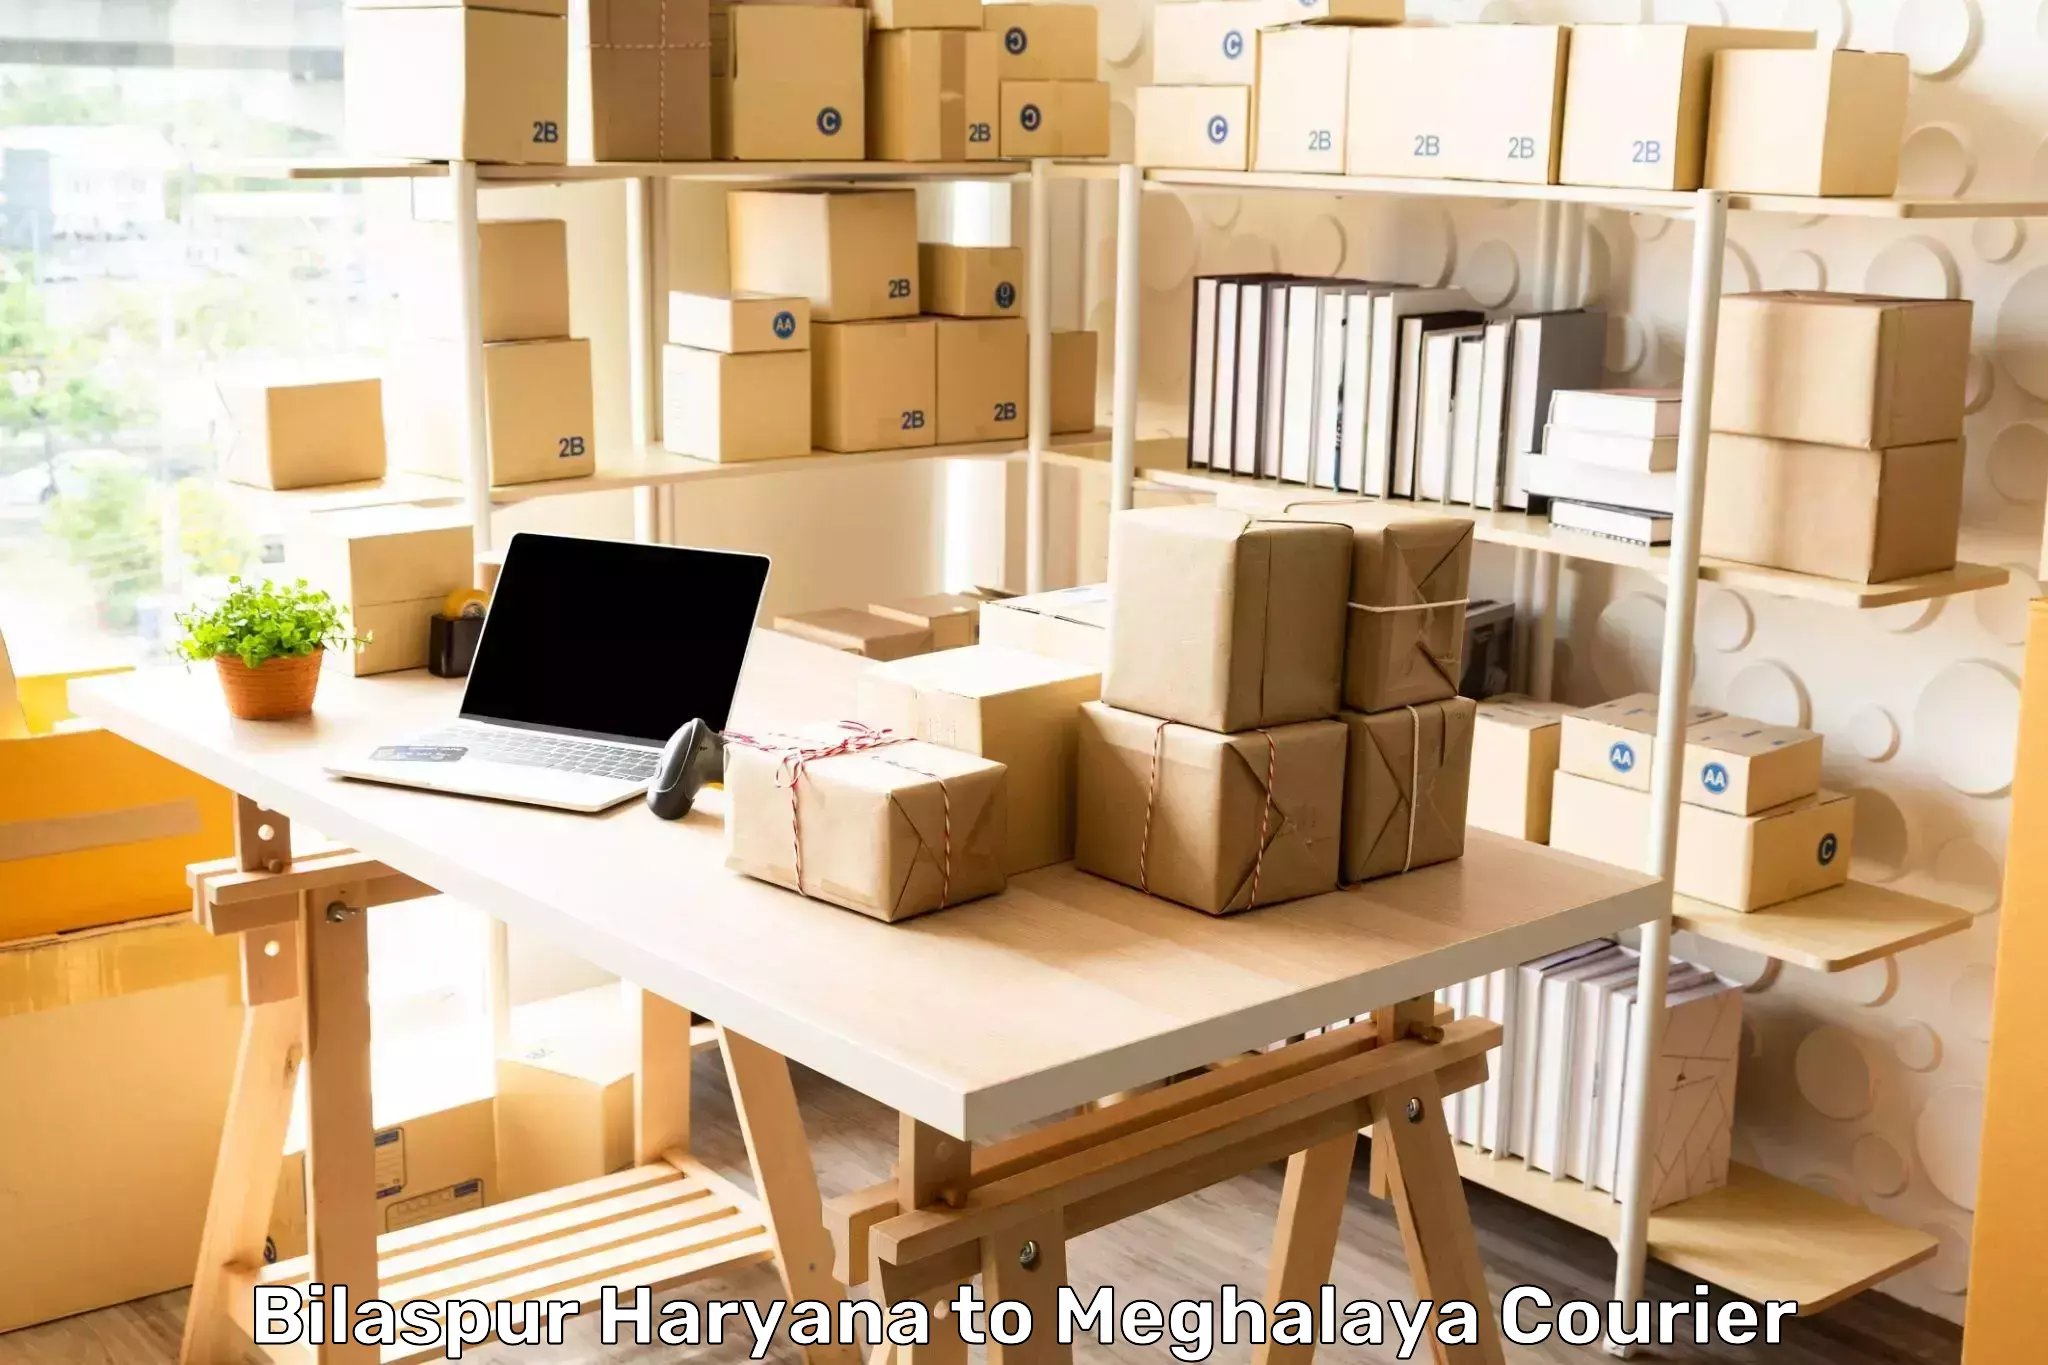 Door-to-door shipment Bilaspur Haryana to Shillong